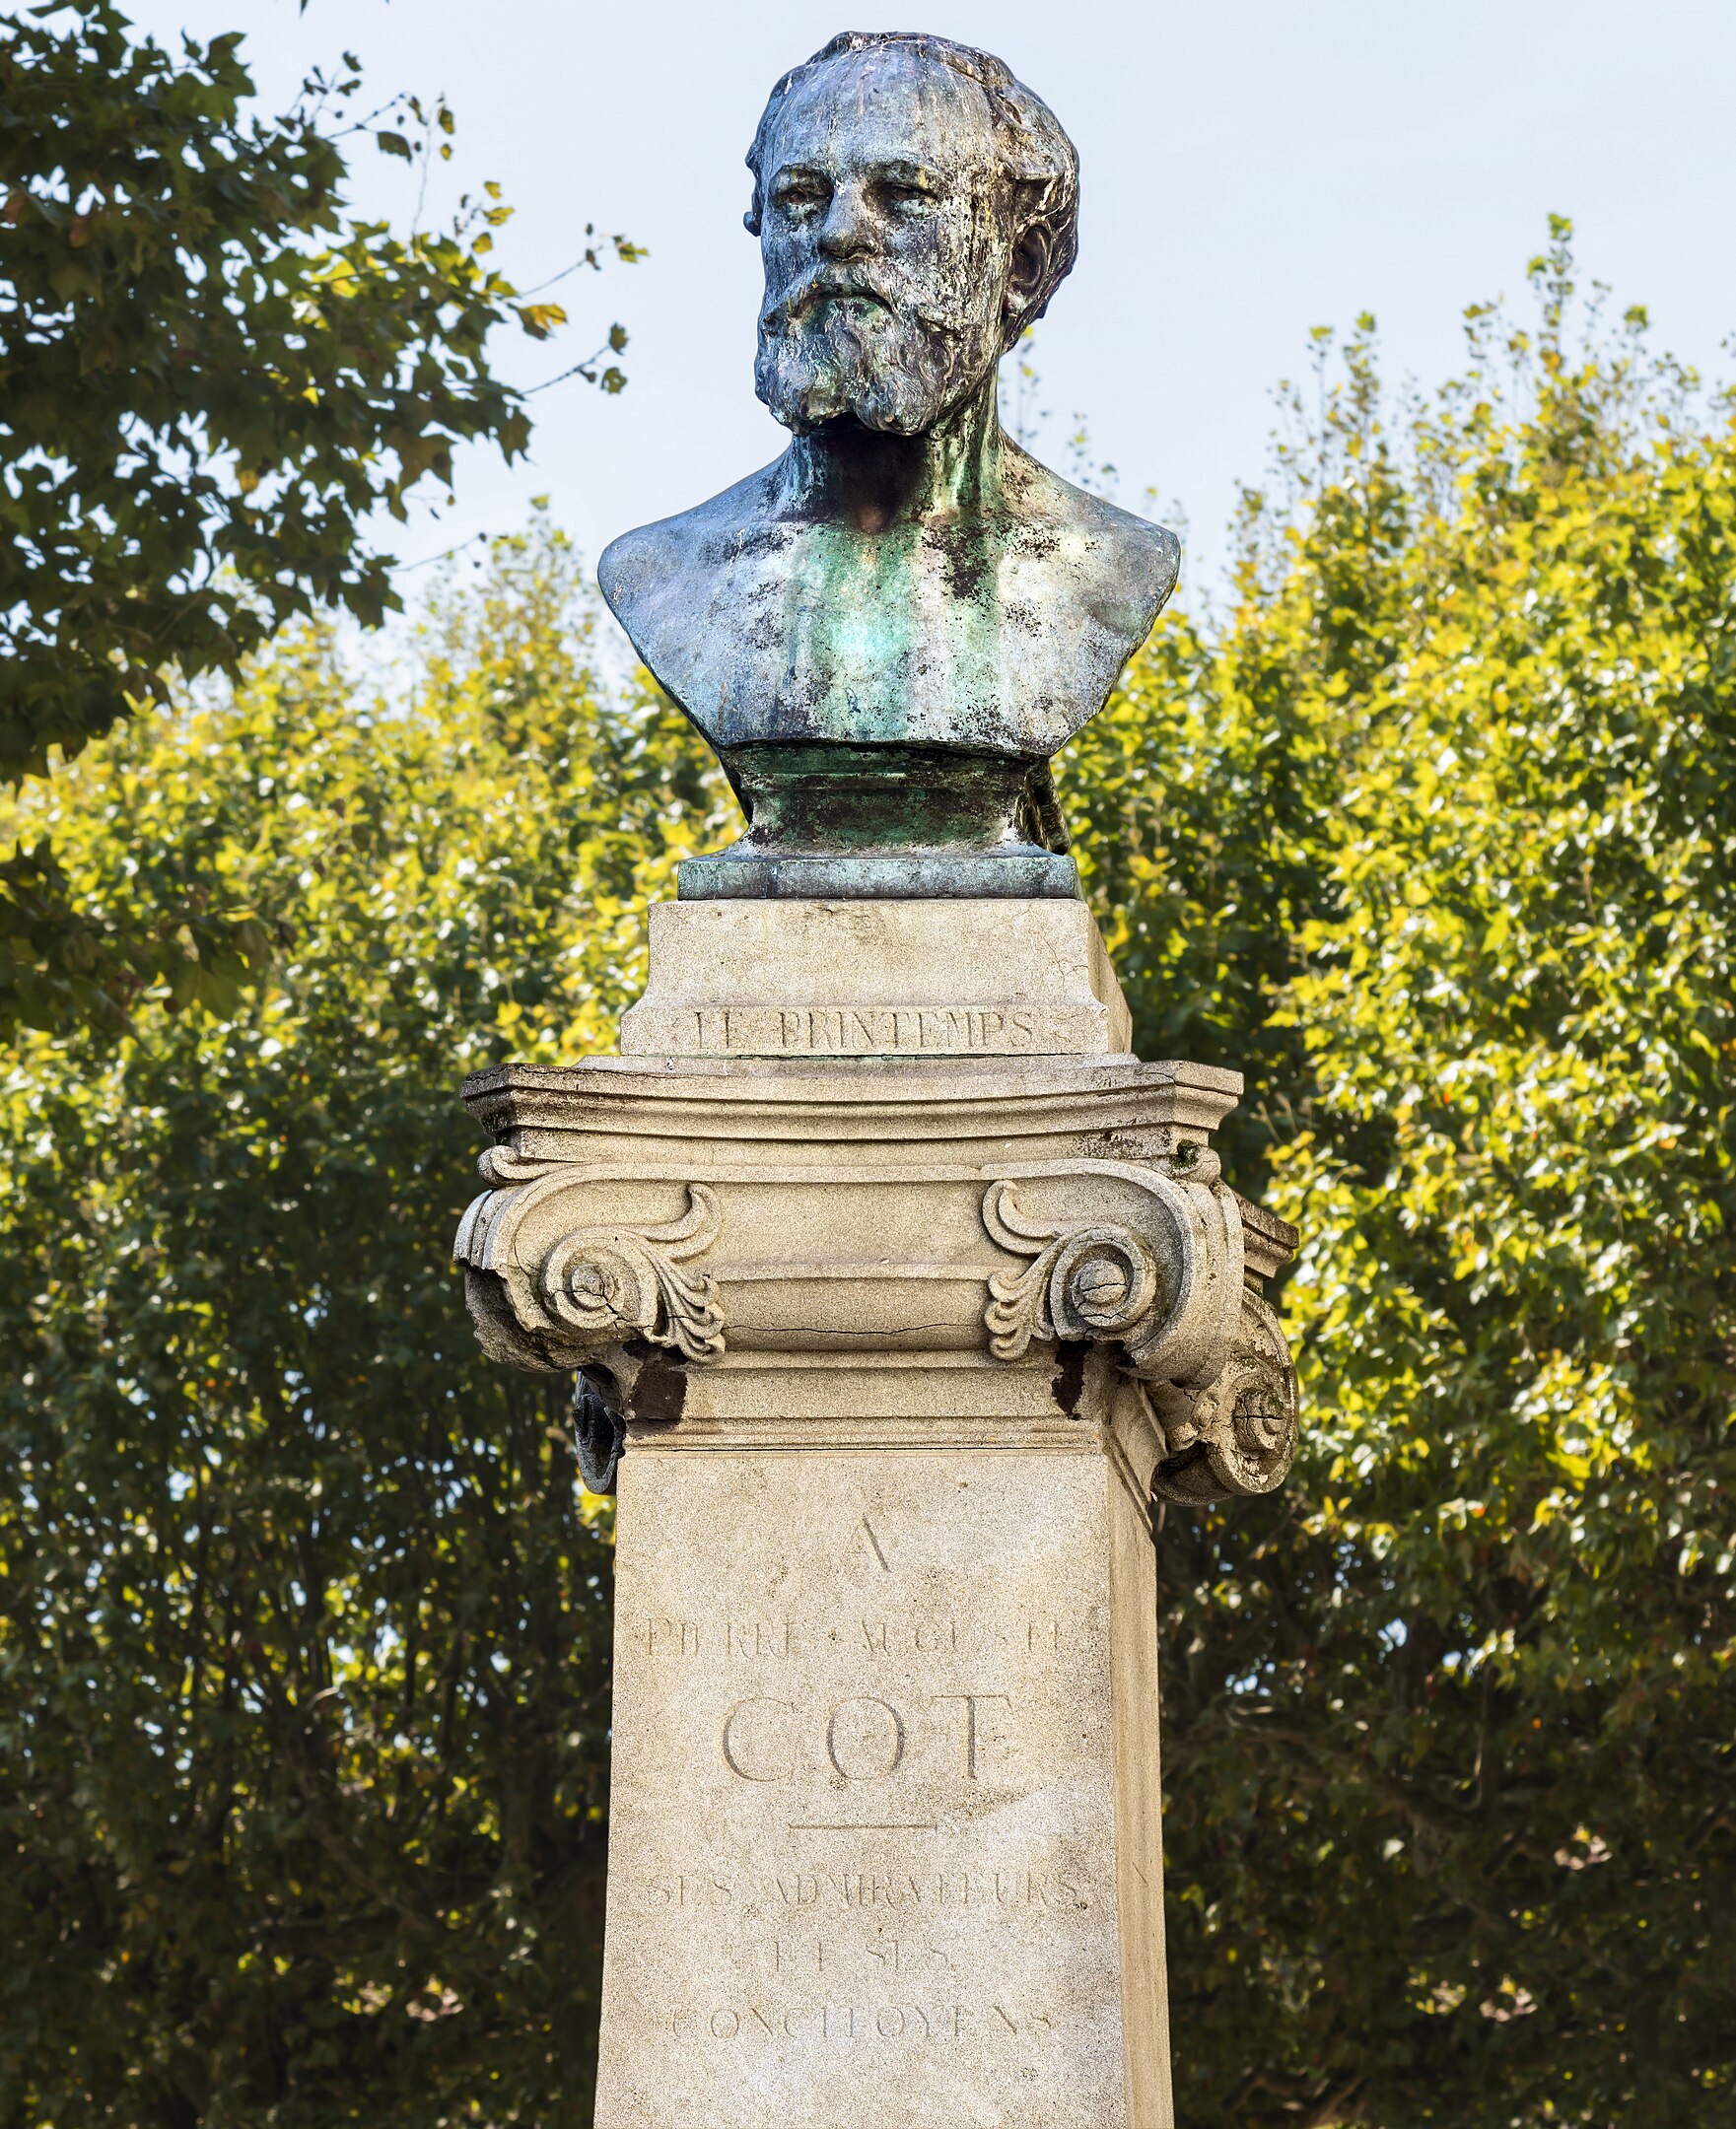 Pierre Auguste Cot - 17 de Fevereiro, 1837 - 2 de Agosto, 1883